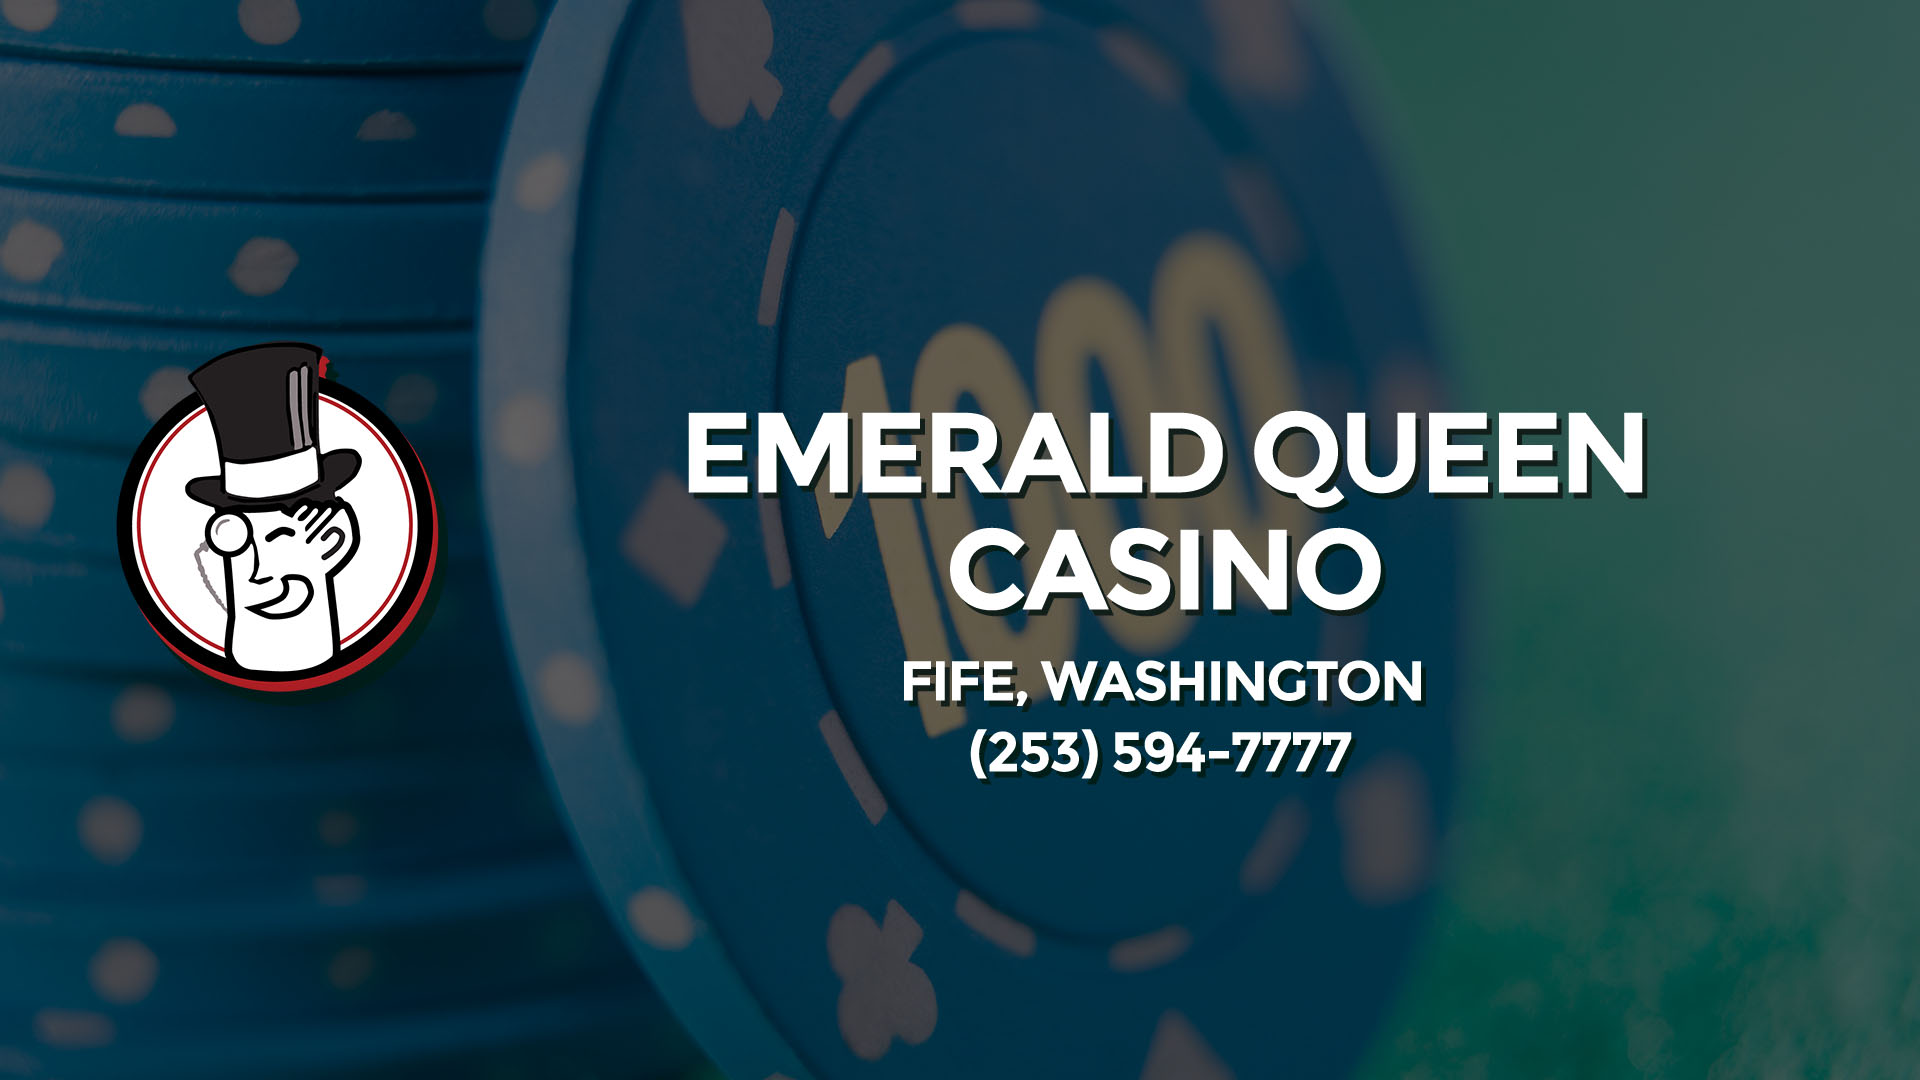 emerald queen casino concerts schedule